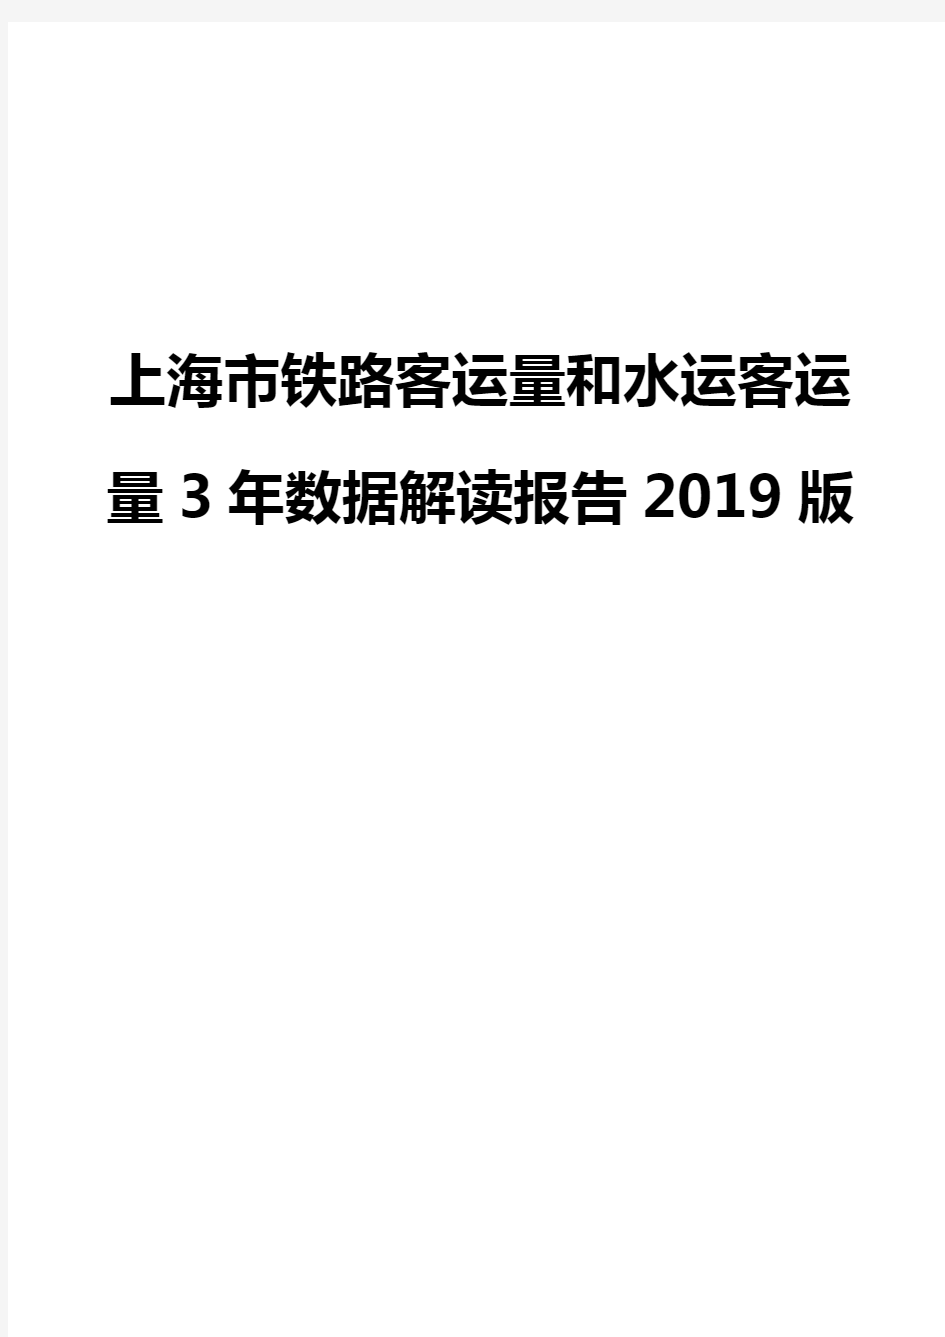 上海市铁路客运量和水运客运量3年数据解读报告2019版